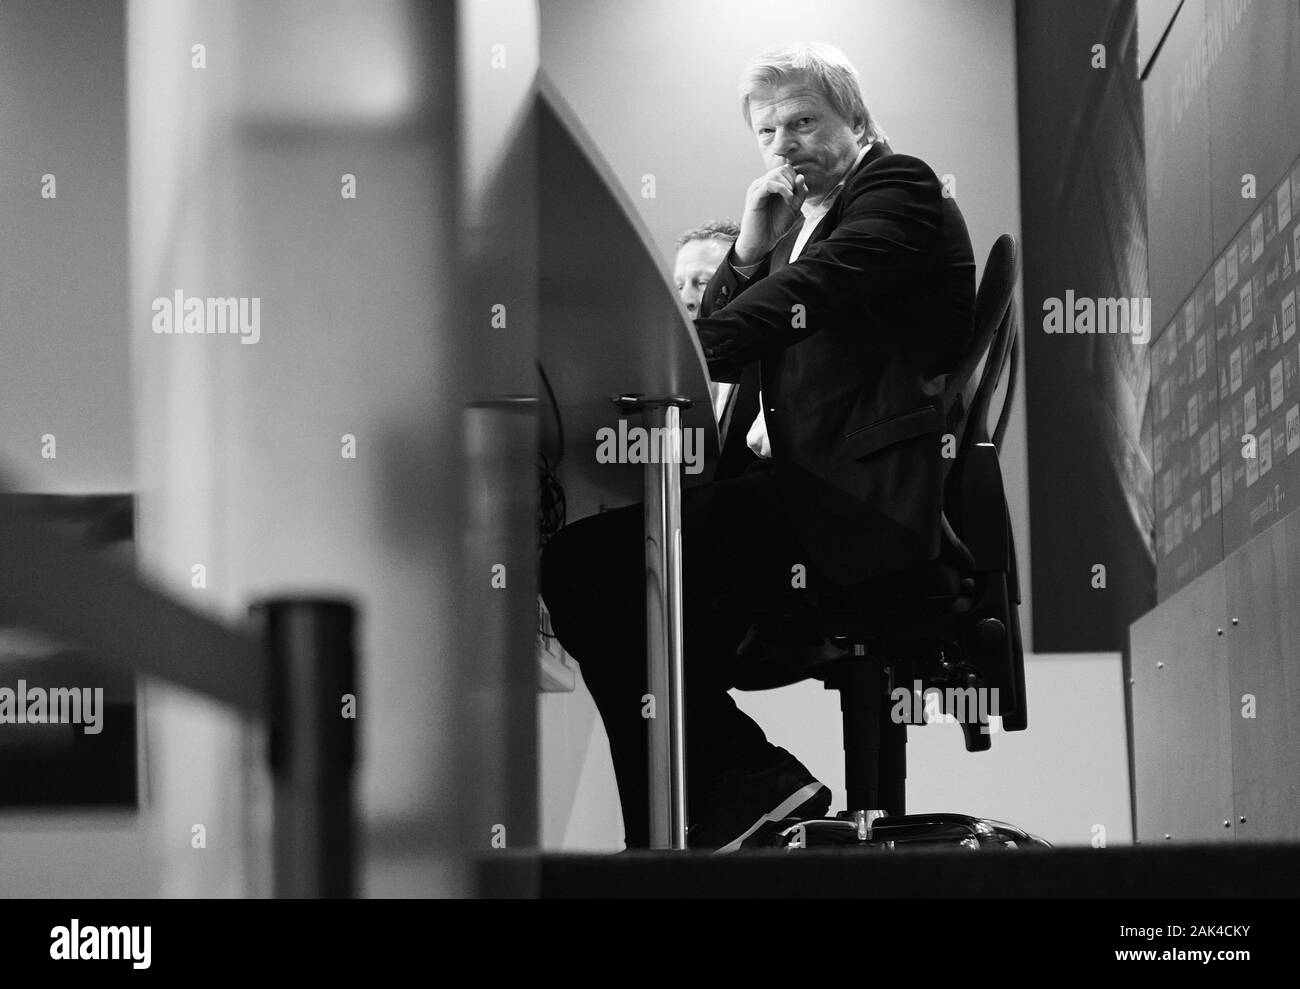 1 Bundesliga Black and White Stock Photos & Images - Alamy